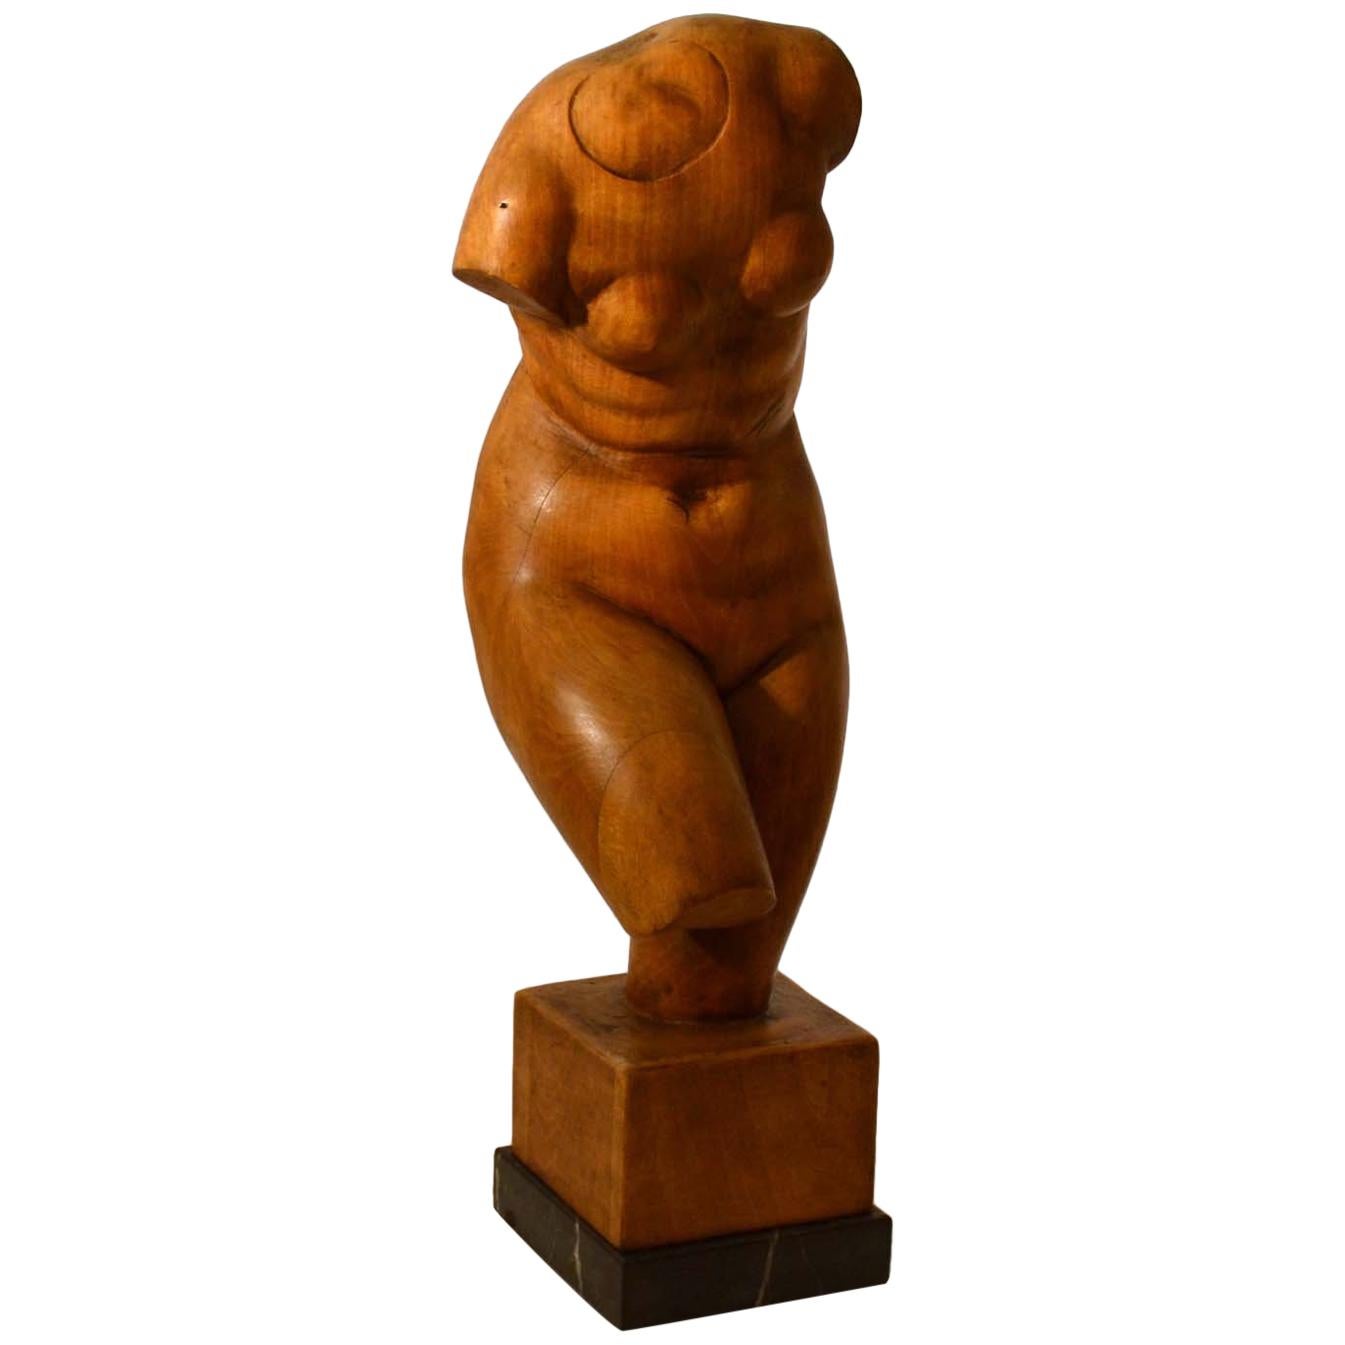 Dutch Sculpture of Female Torso Carved in Wood by V. de Vos